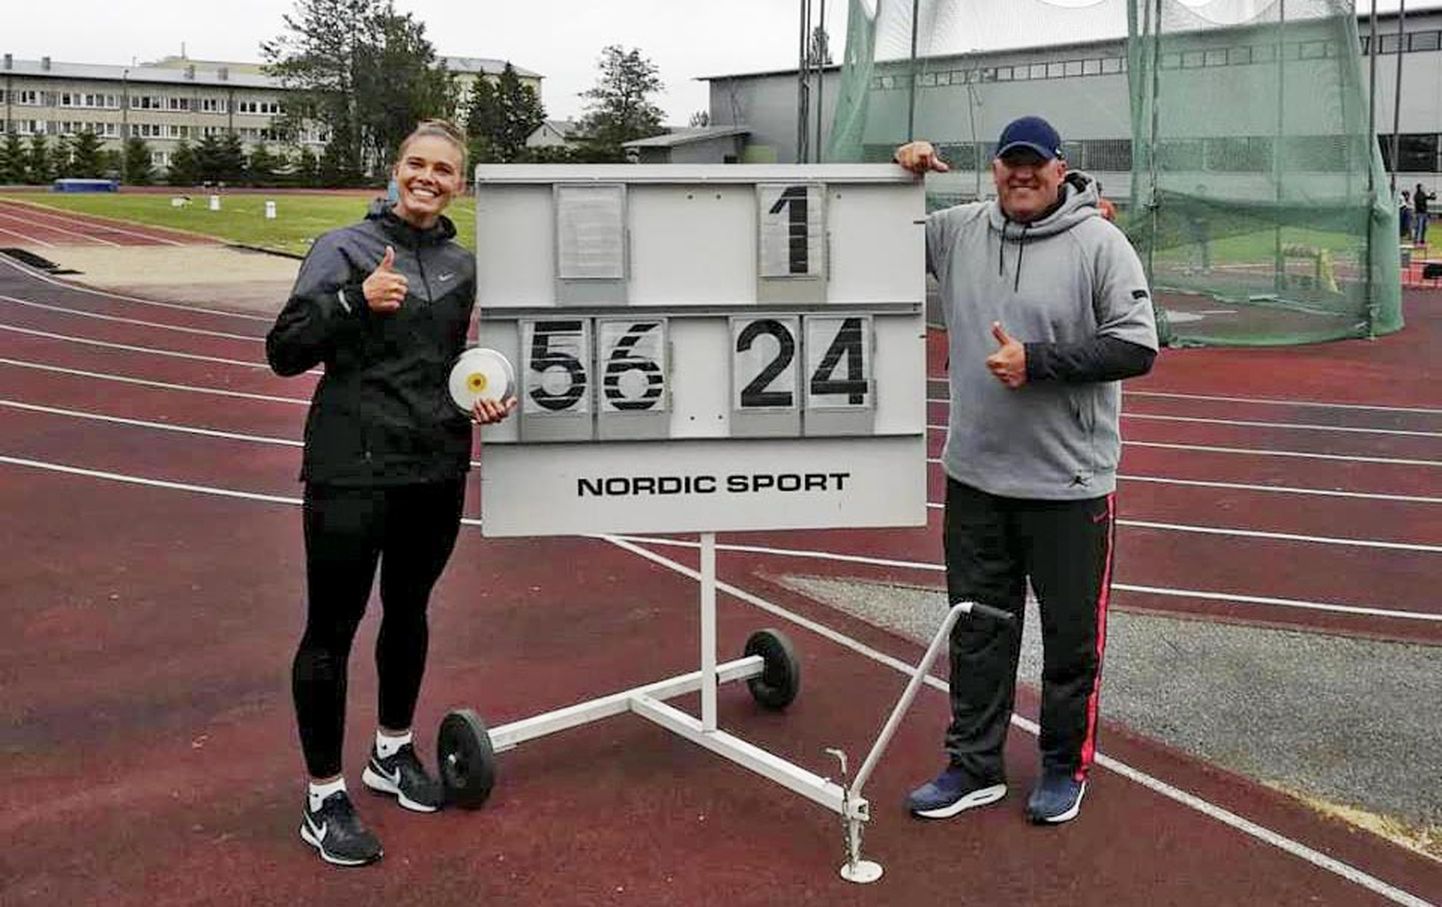 Viljandist pärit kettaheitja Kätlin Tõllasson püstitas teisipäeval uue isikliku rekordi, millega täitis ka Euroopa meistrivõistlustest osavõtu normi.